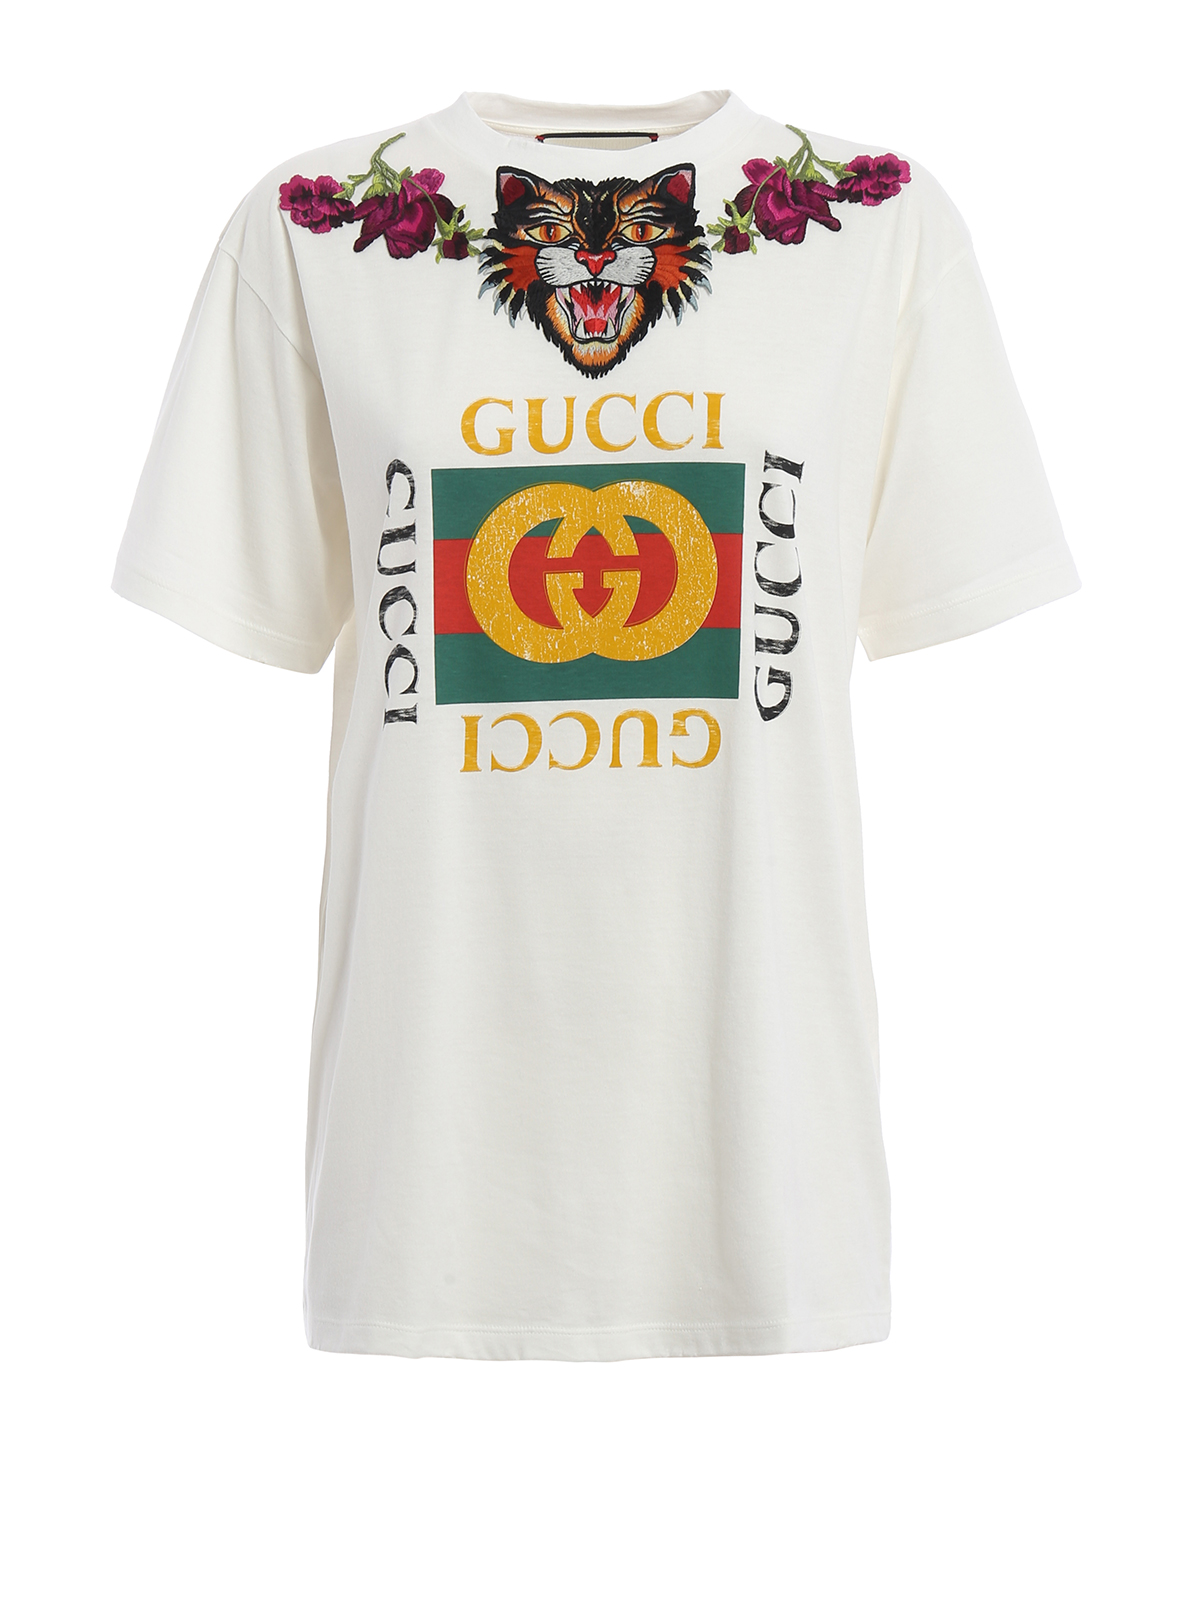 Camisetas Gucci - Camiseta Mujer - 457094X5S719234